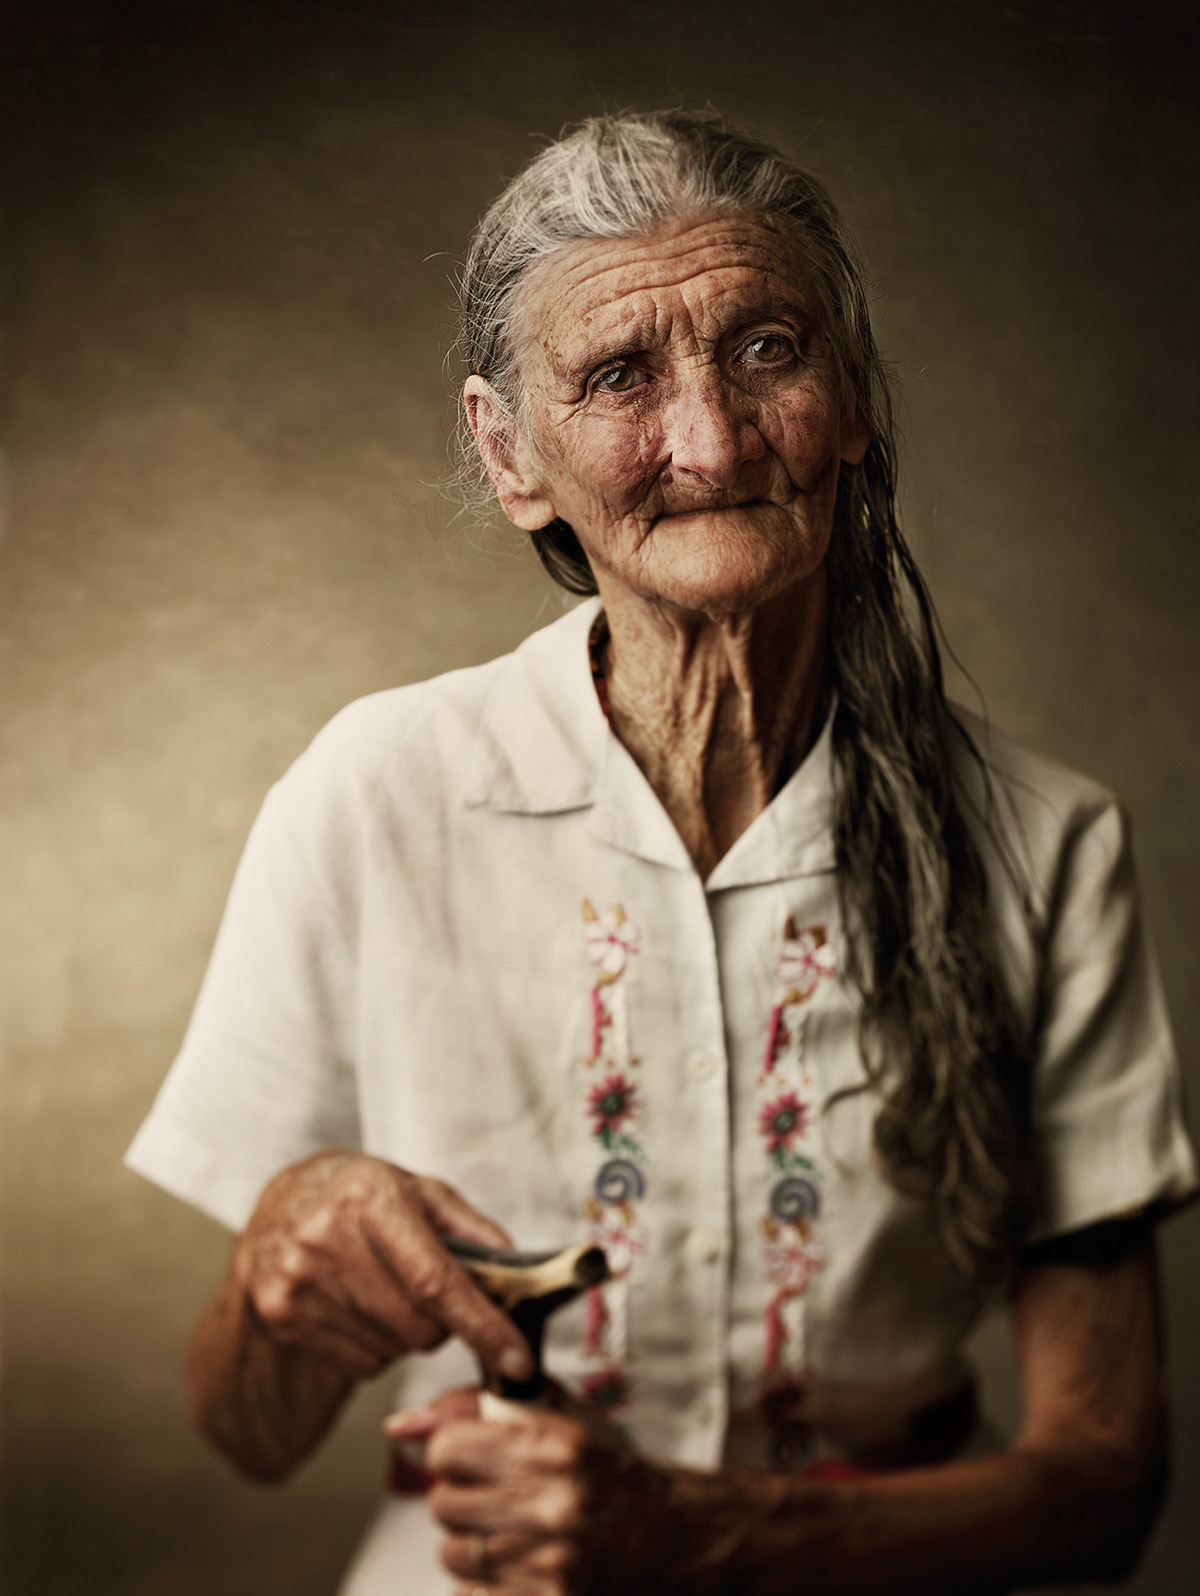 portrait retrato Portraiture retouch retoucher creative retouch Elderly Ancient faces people